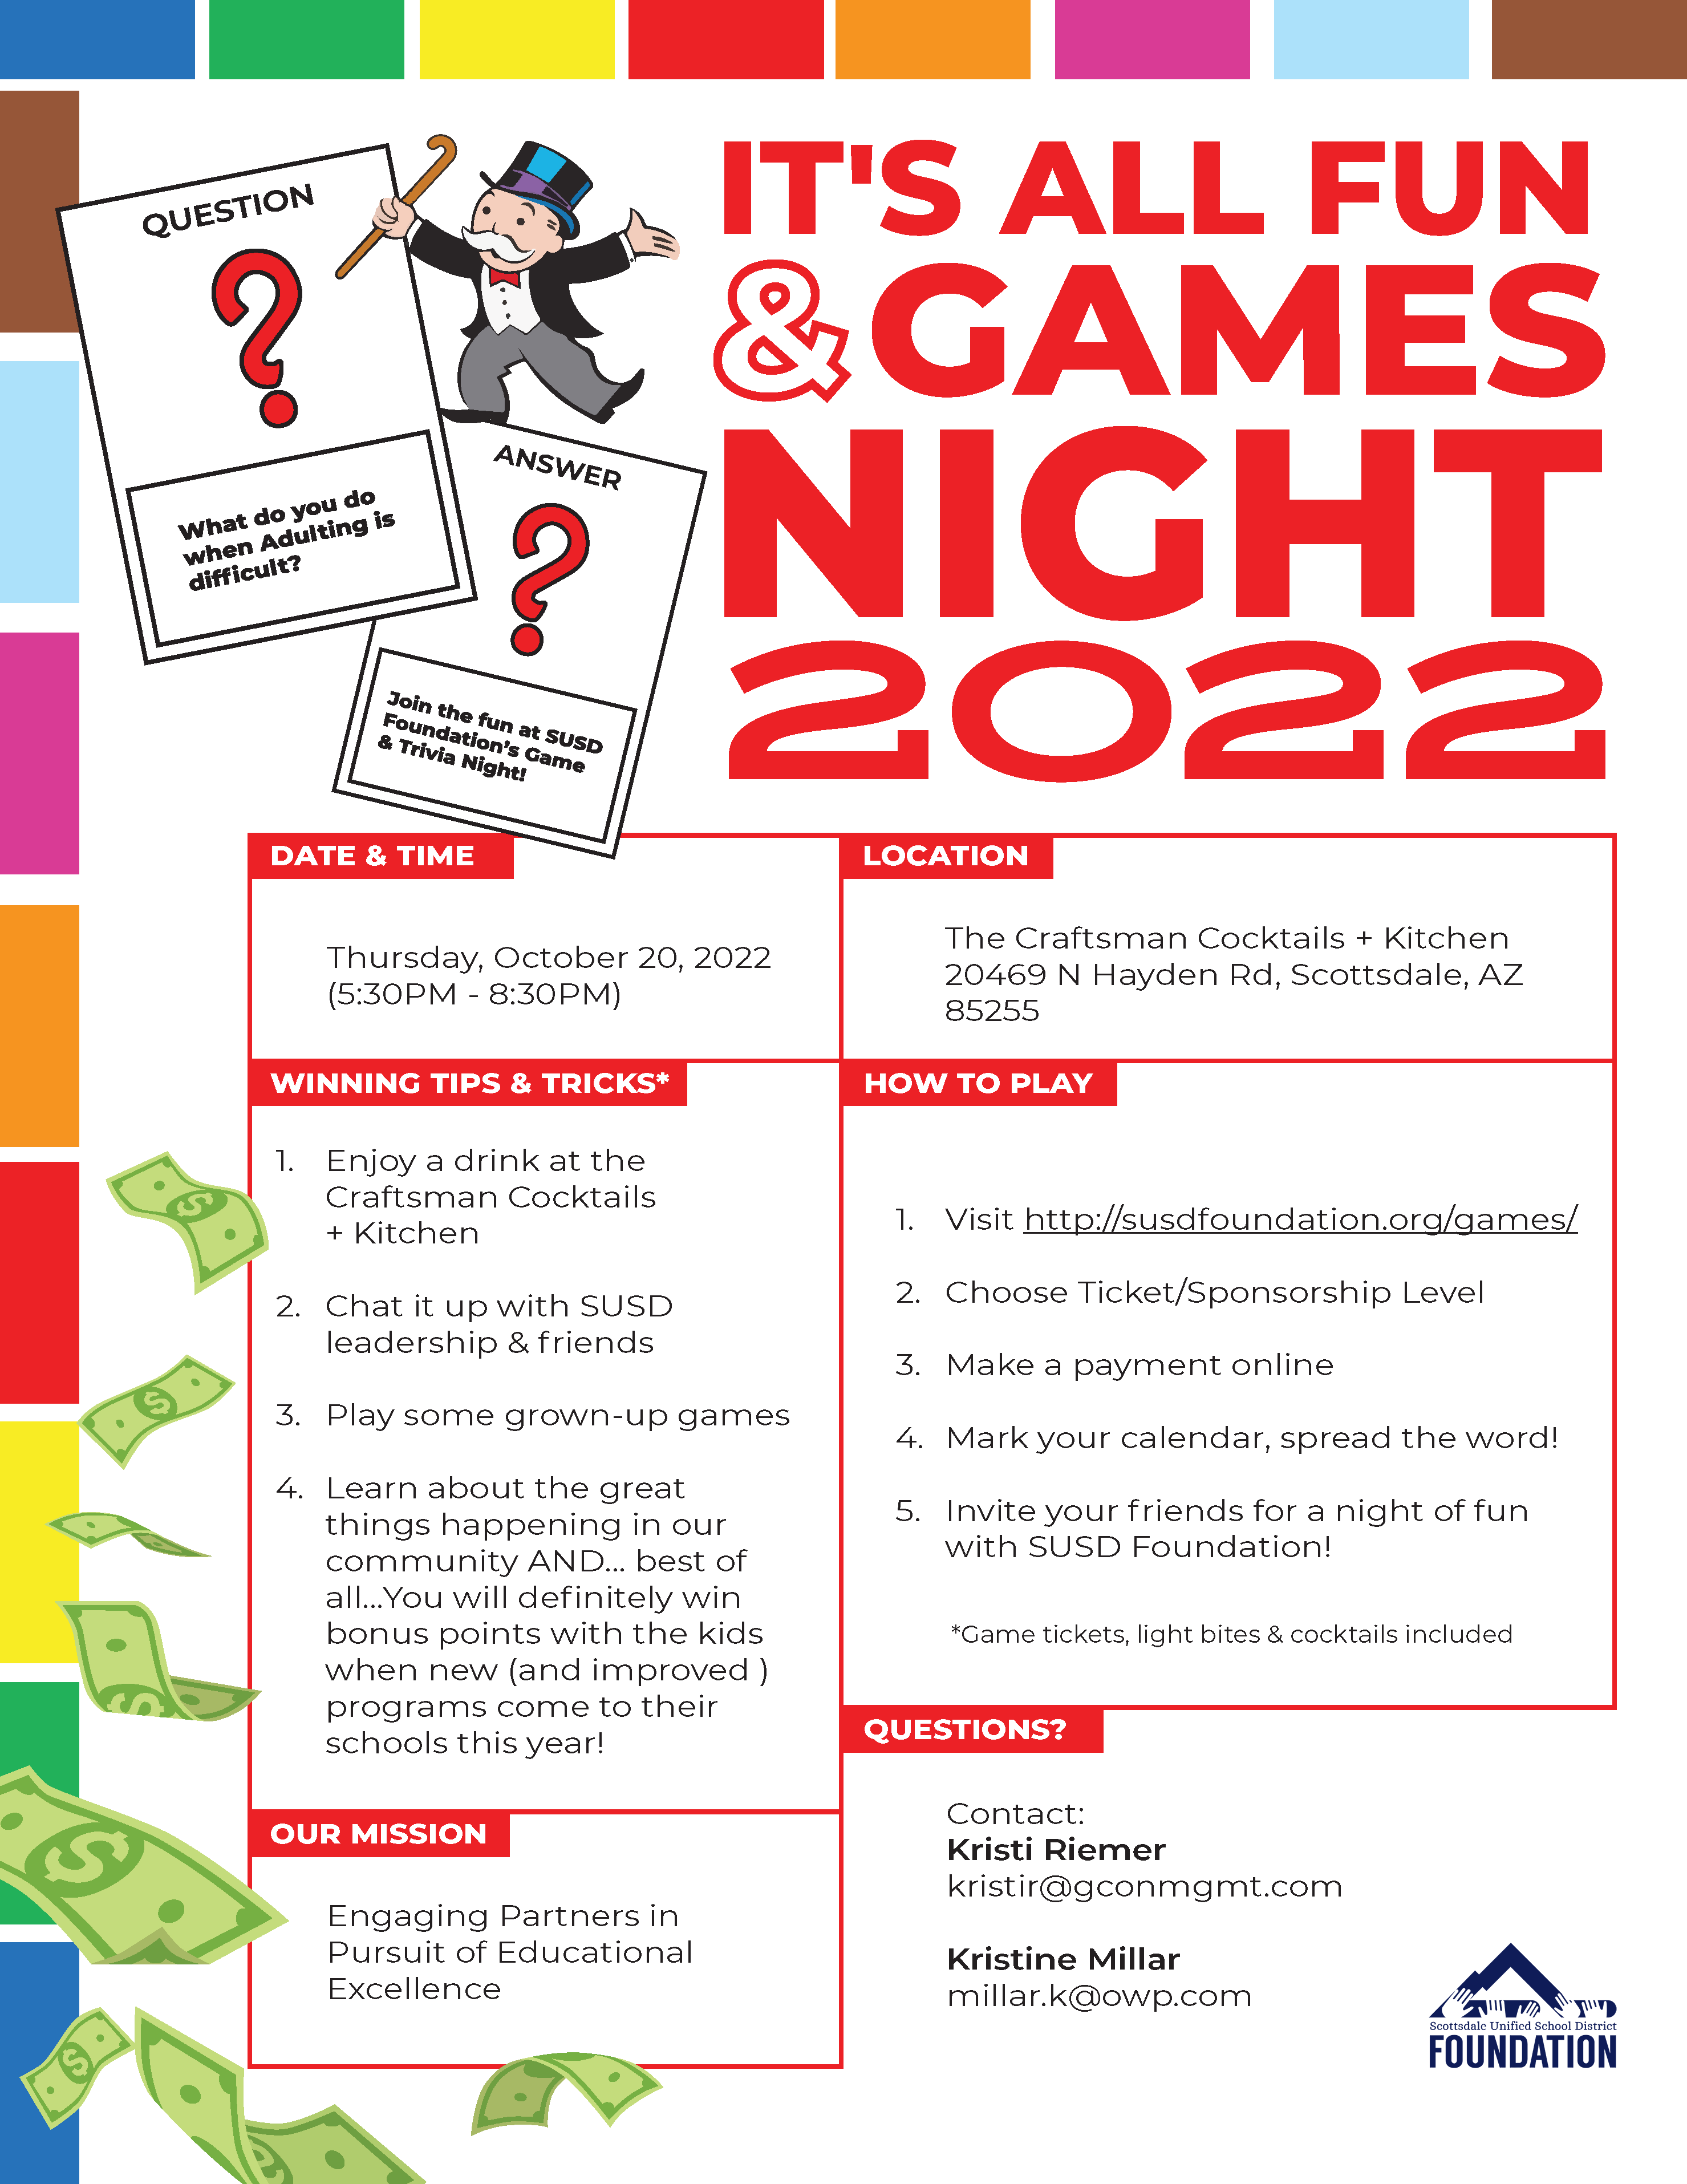 Fun and Games Night 2022